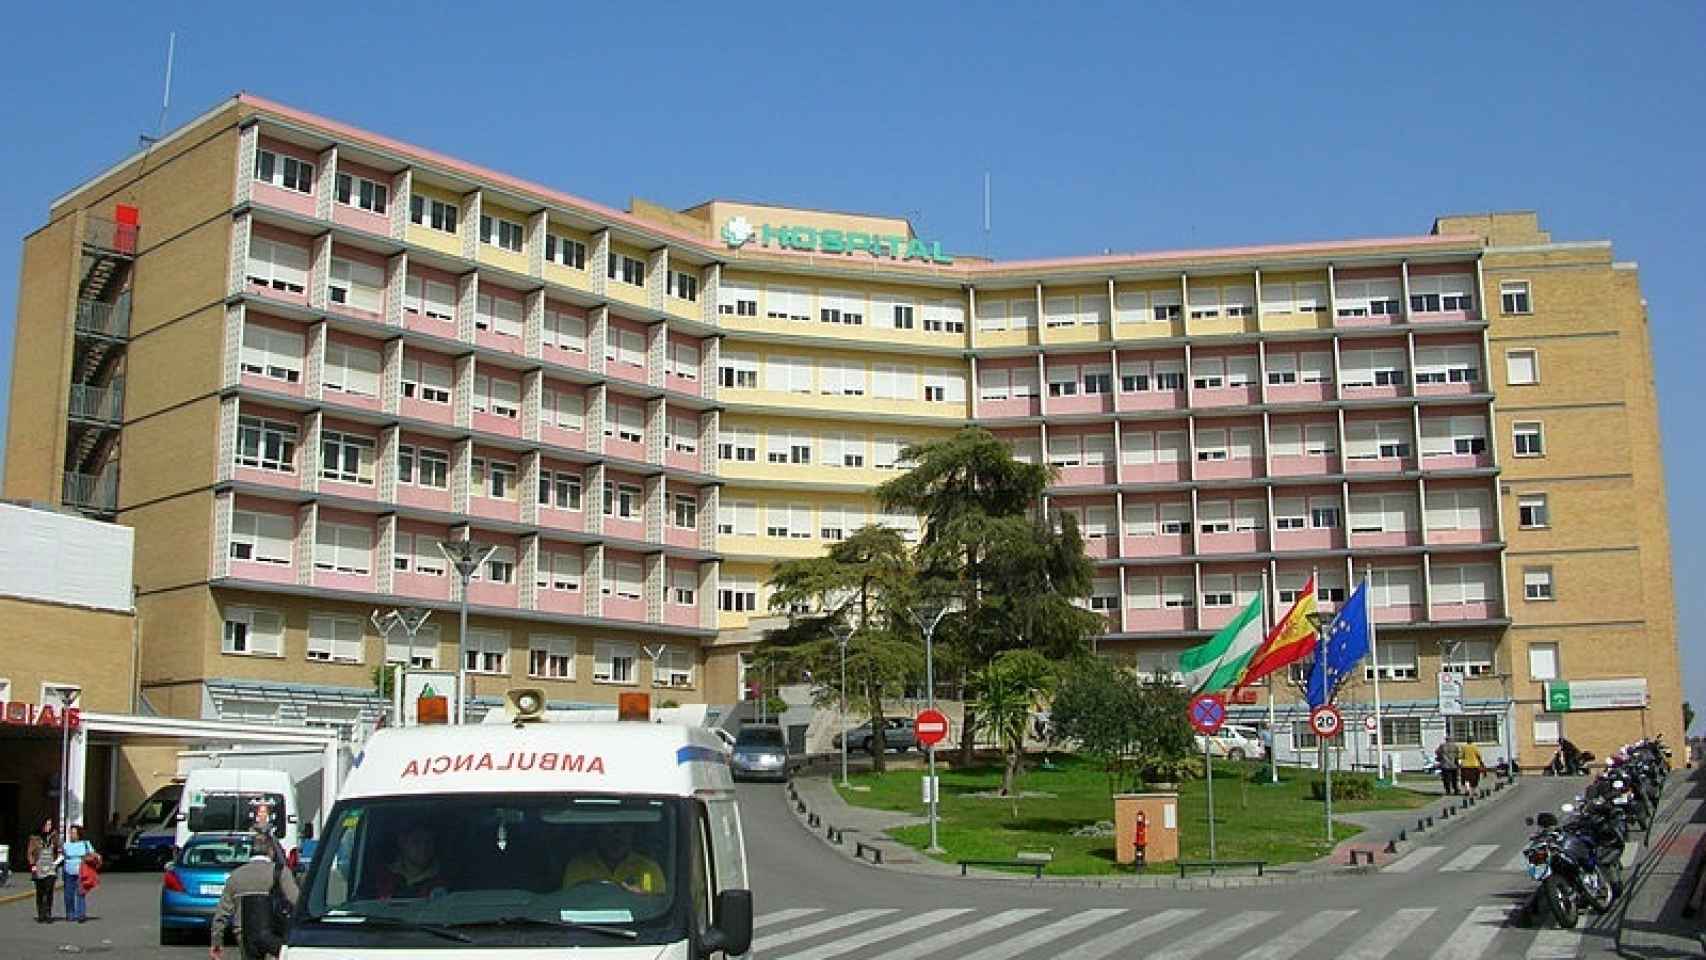 Hospital Universitario Virgen del Rocío de Sevilla.